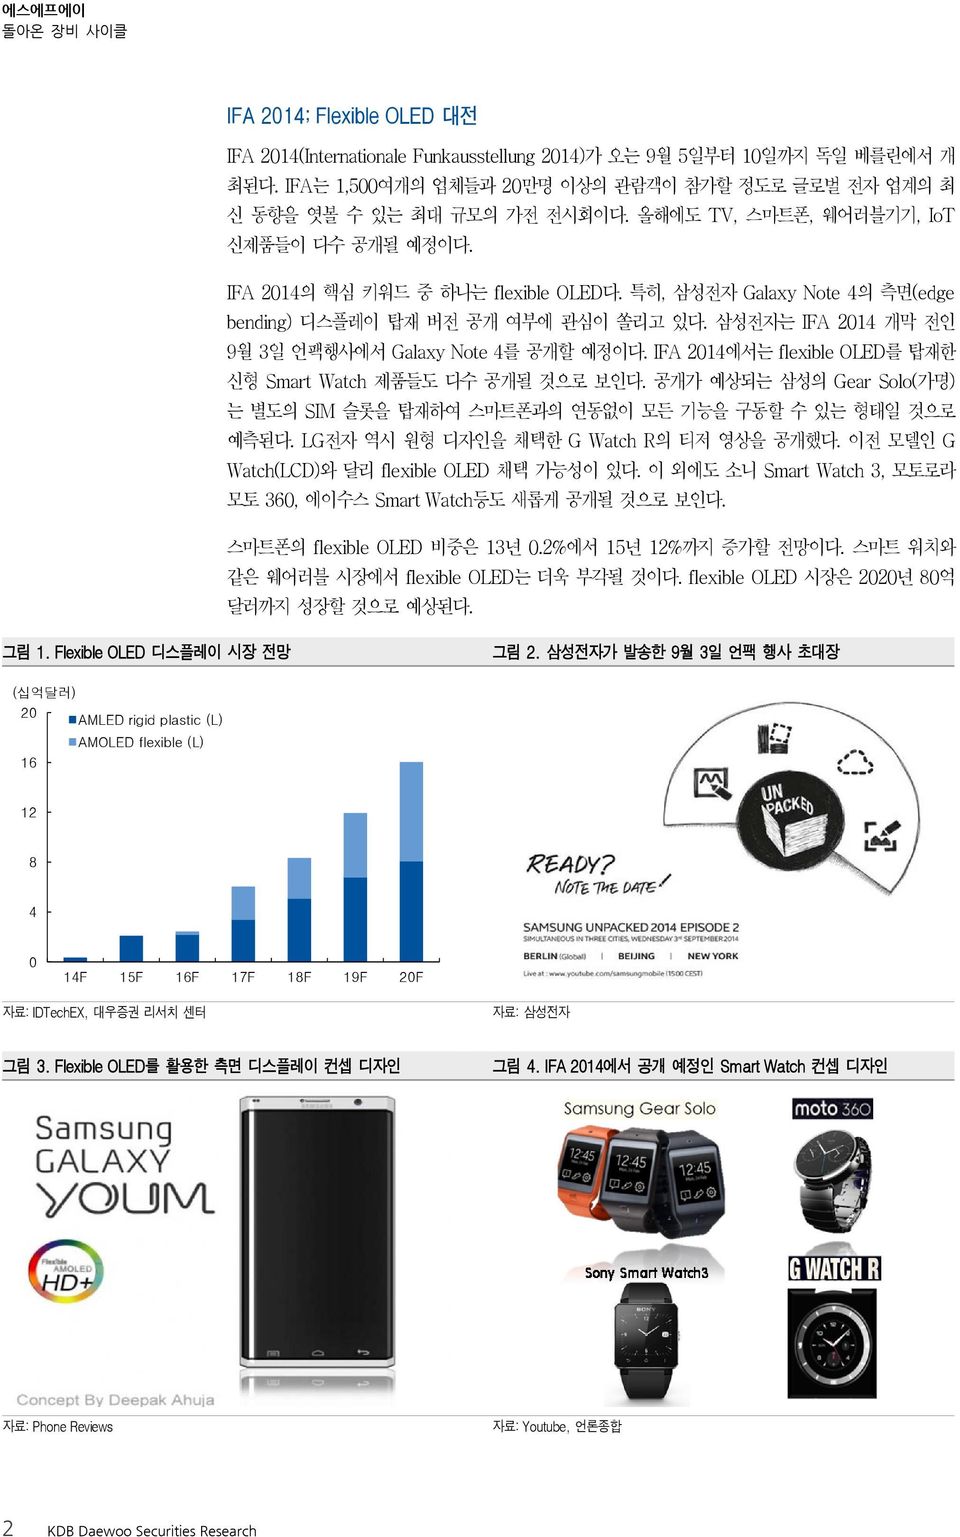 삼성전자는 IFA 214 개막 전인 9월 3일 언팩행사에서 Galaxy Note 4를 공개할 예정이다. IFA 214에서는 flexible OLED를 탑재한 신형 Smart Watch 제품들도 다수 공개될 것으로 보인다.